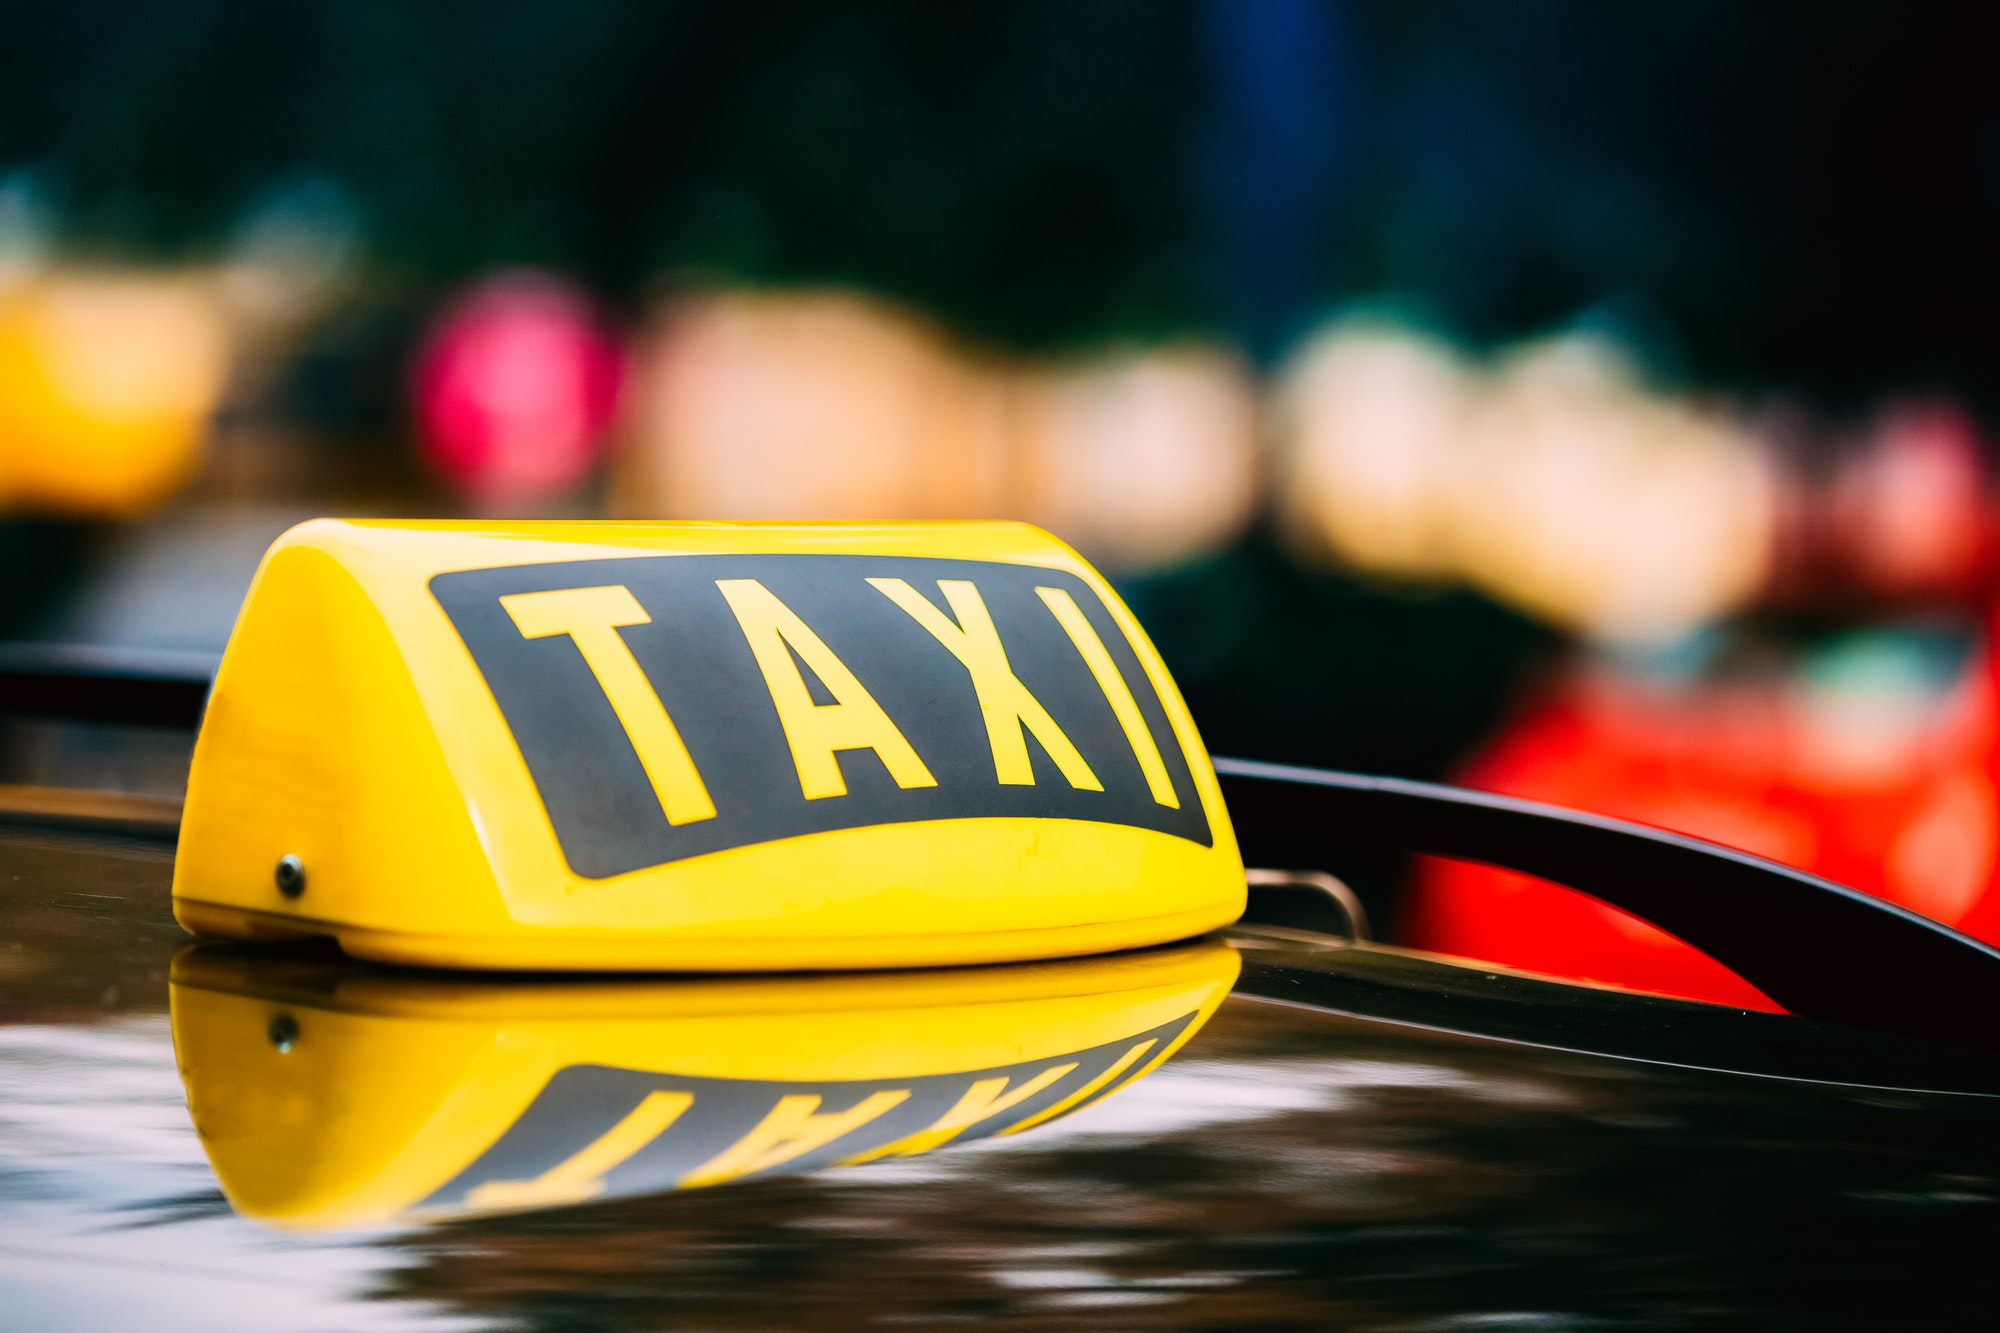 Les secrets des taxis bordelais: comment chaque trajet devient une aventure unique !